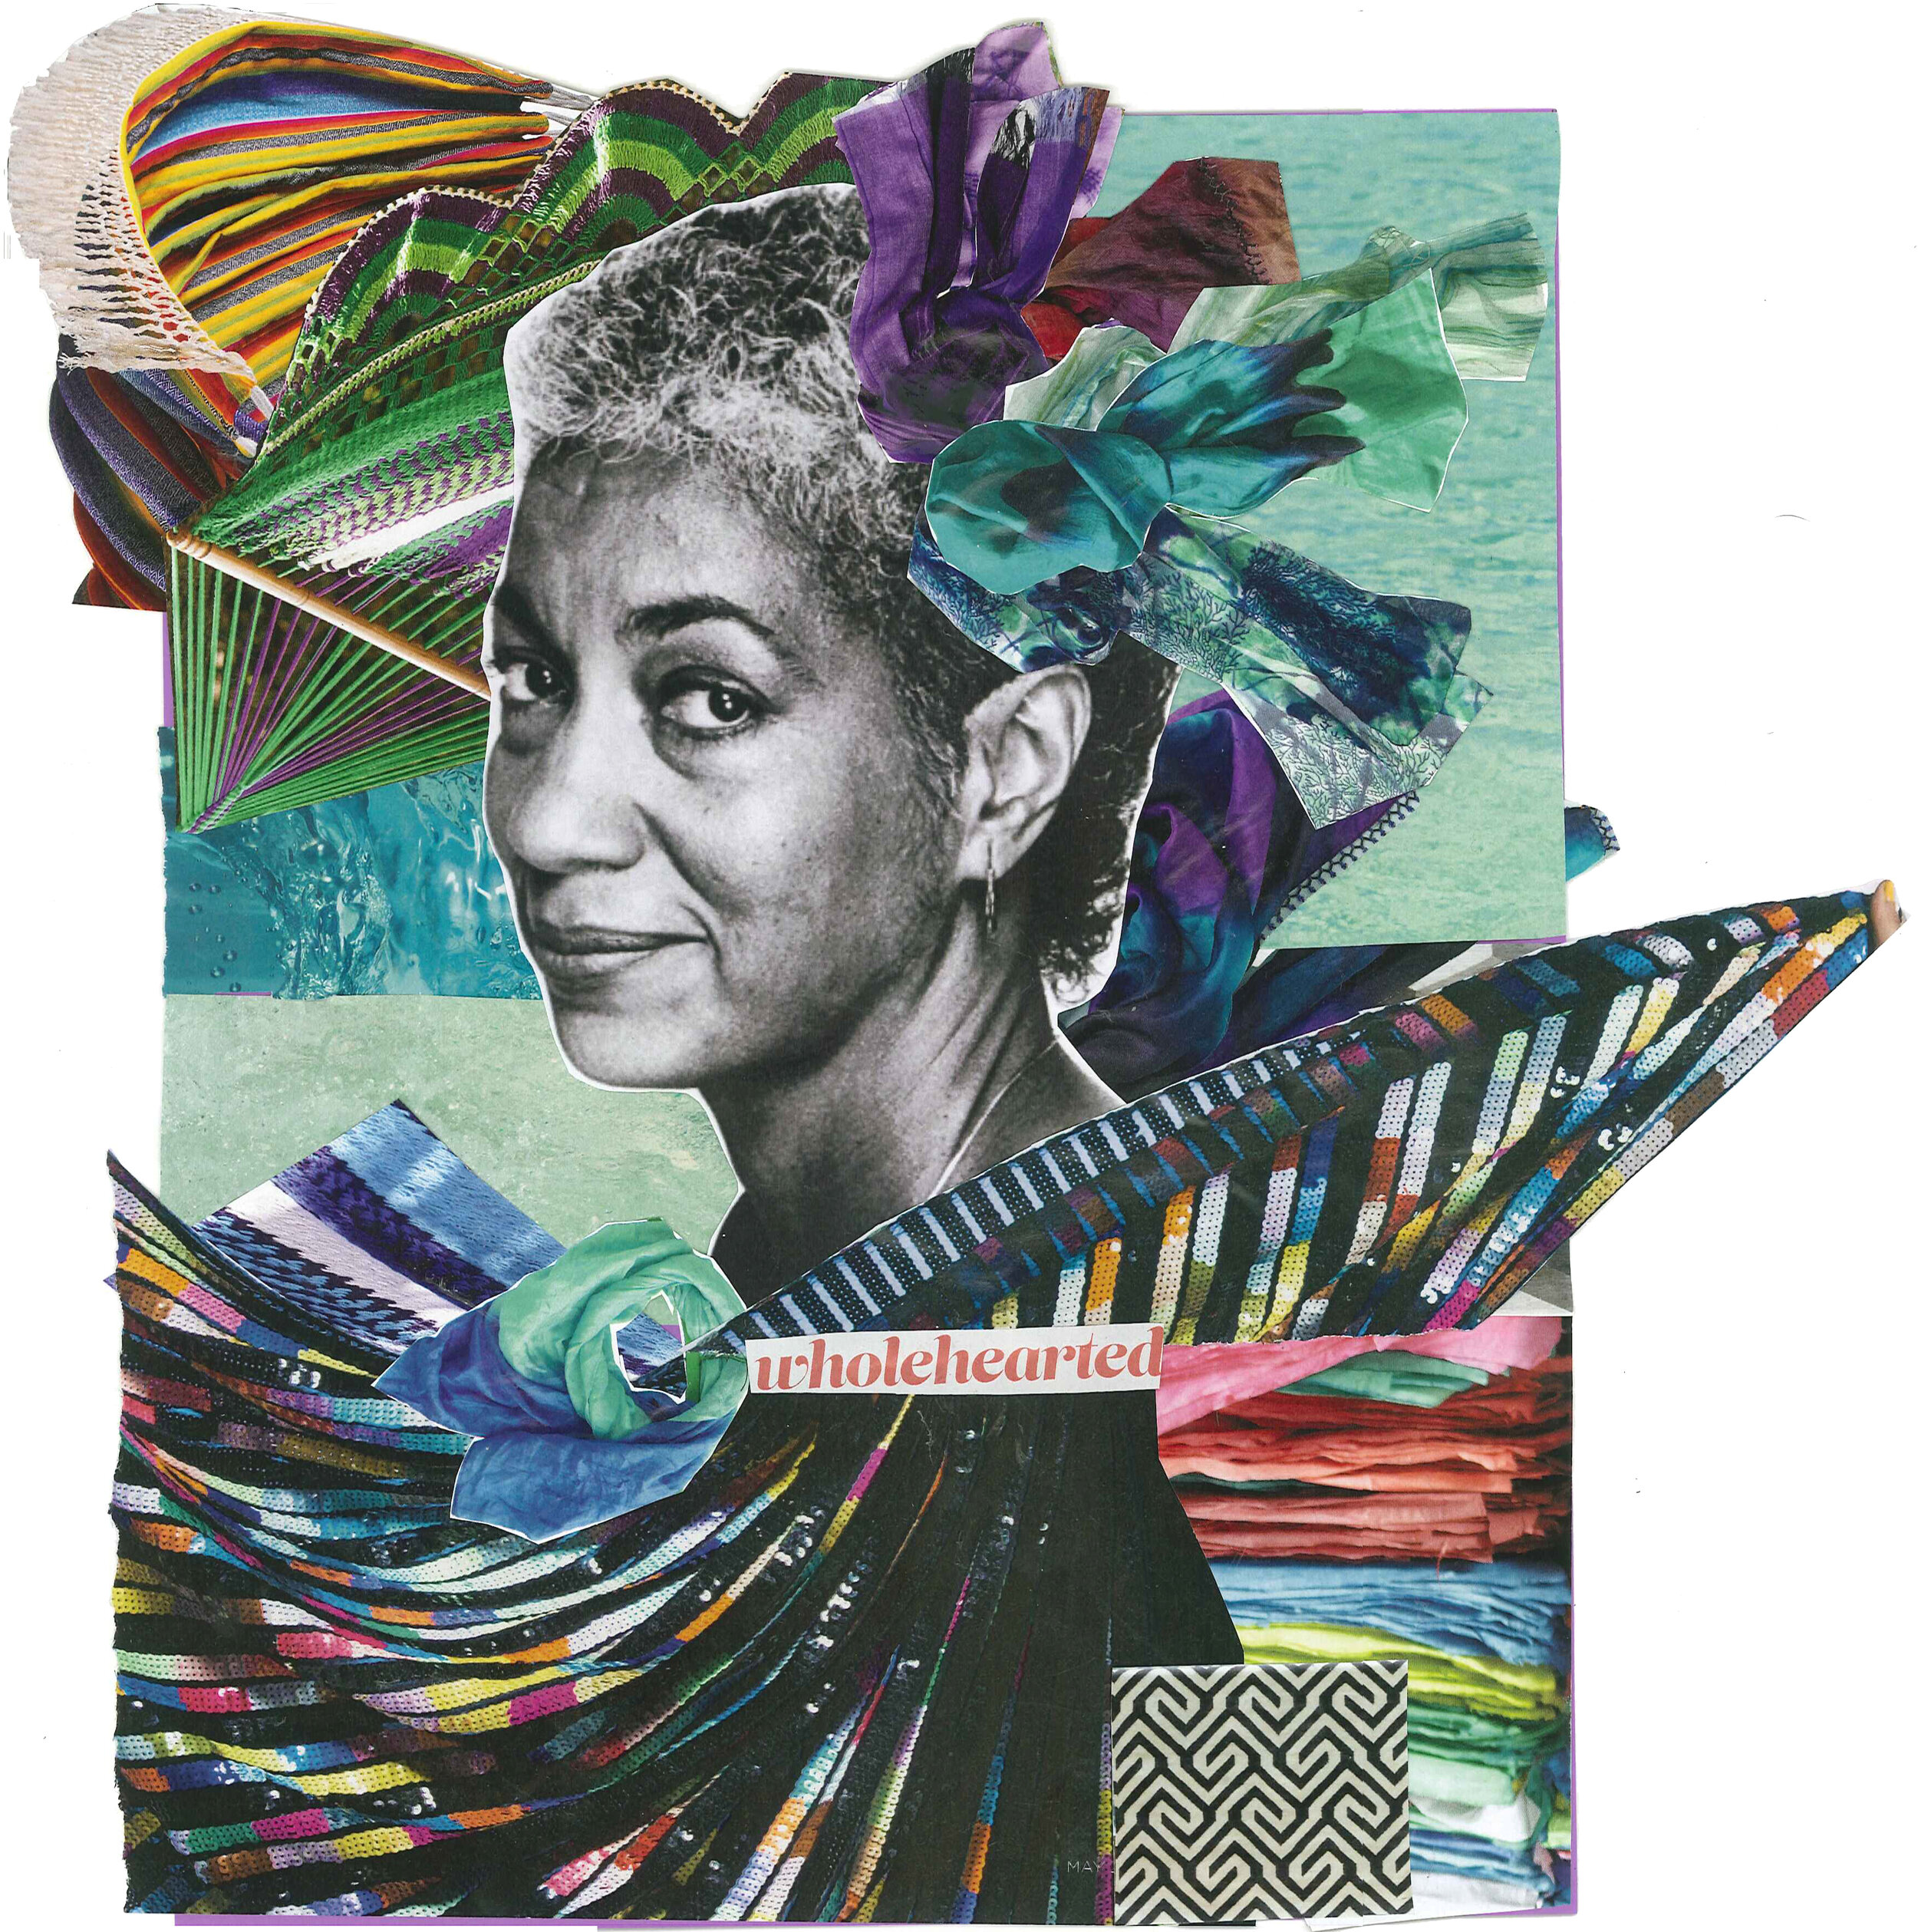 Paper collage made by Alexis Pauline Gumbs depicting June Jordan